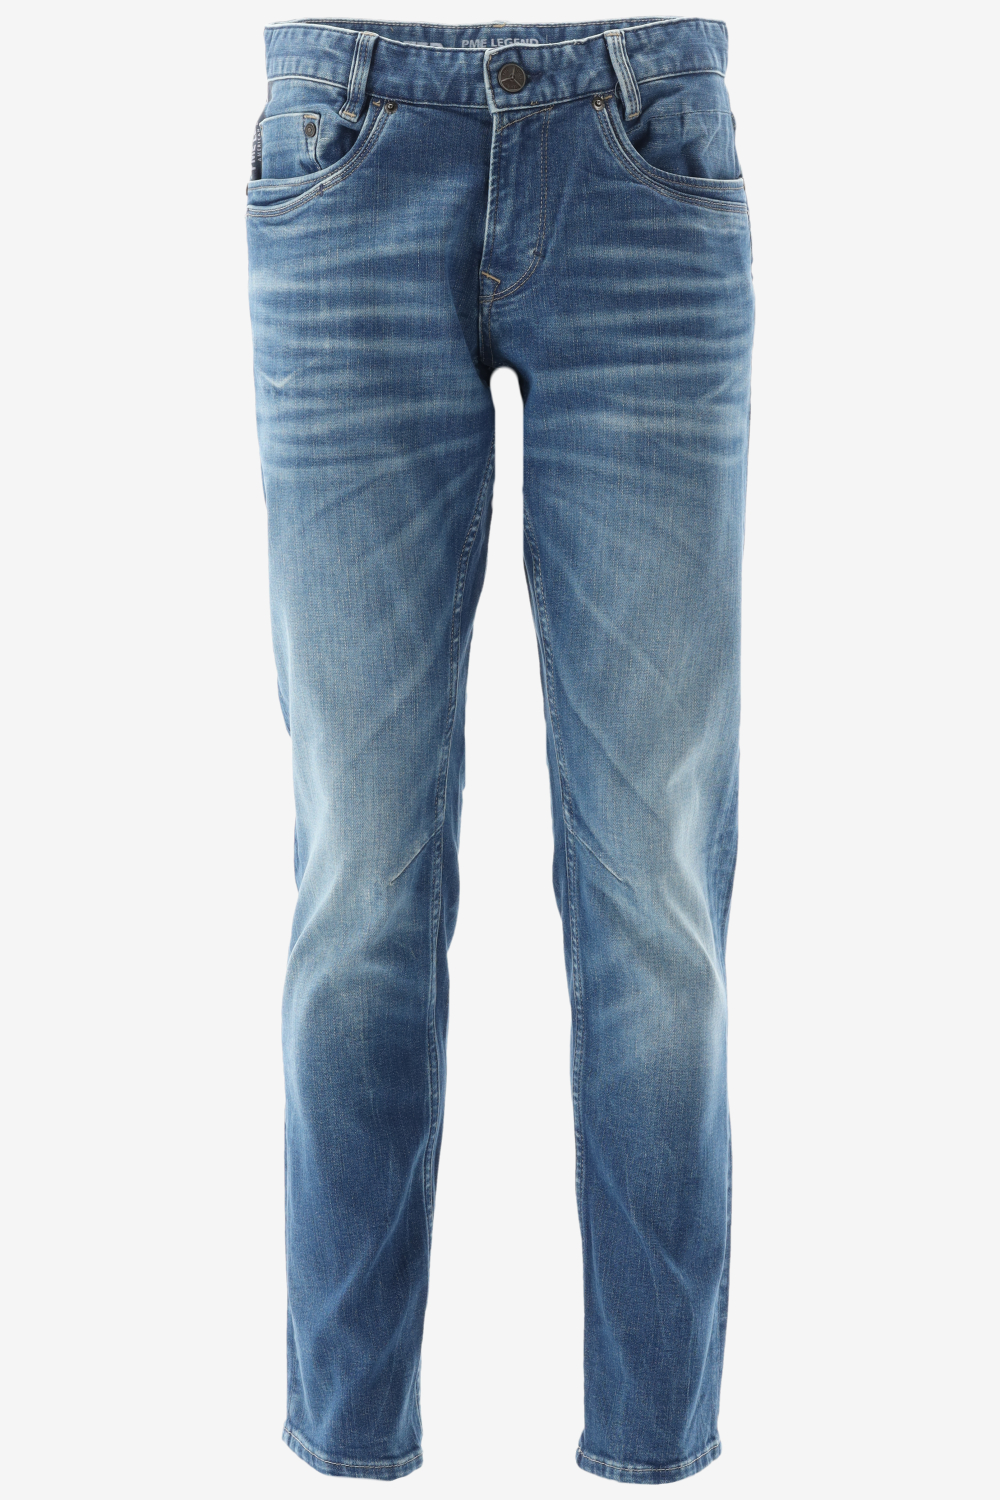 PME Legend - Skymaster Jeans Blauw - W 30 - L 30 - Regular-fit